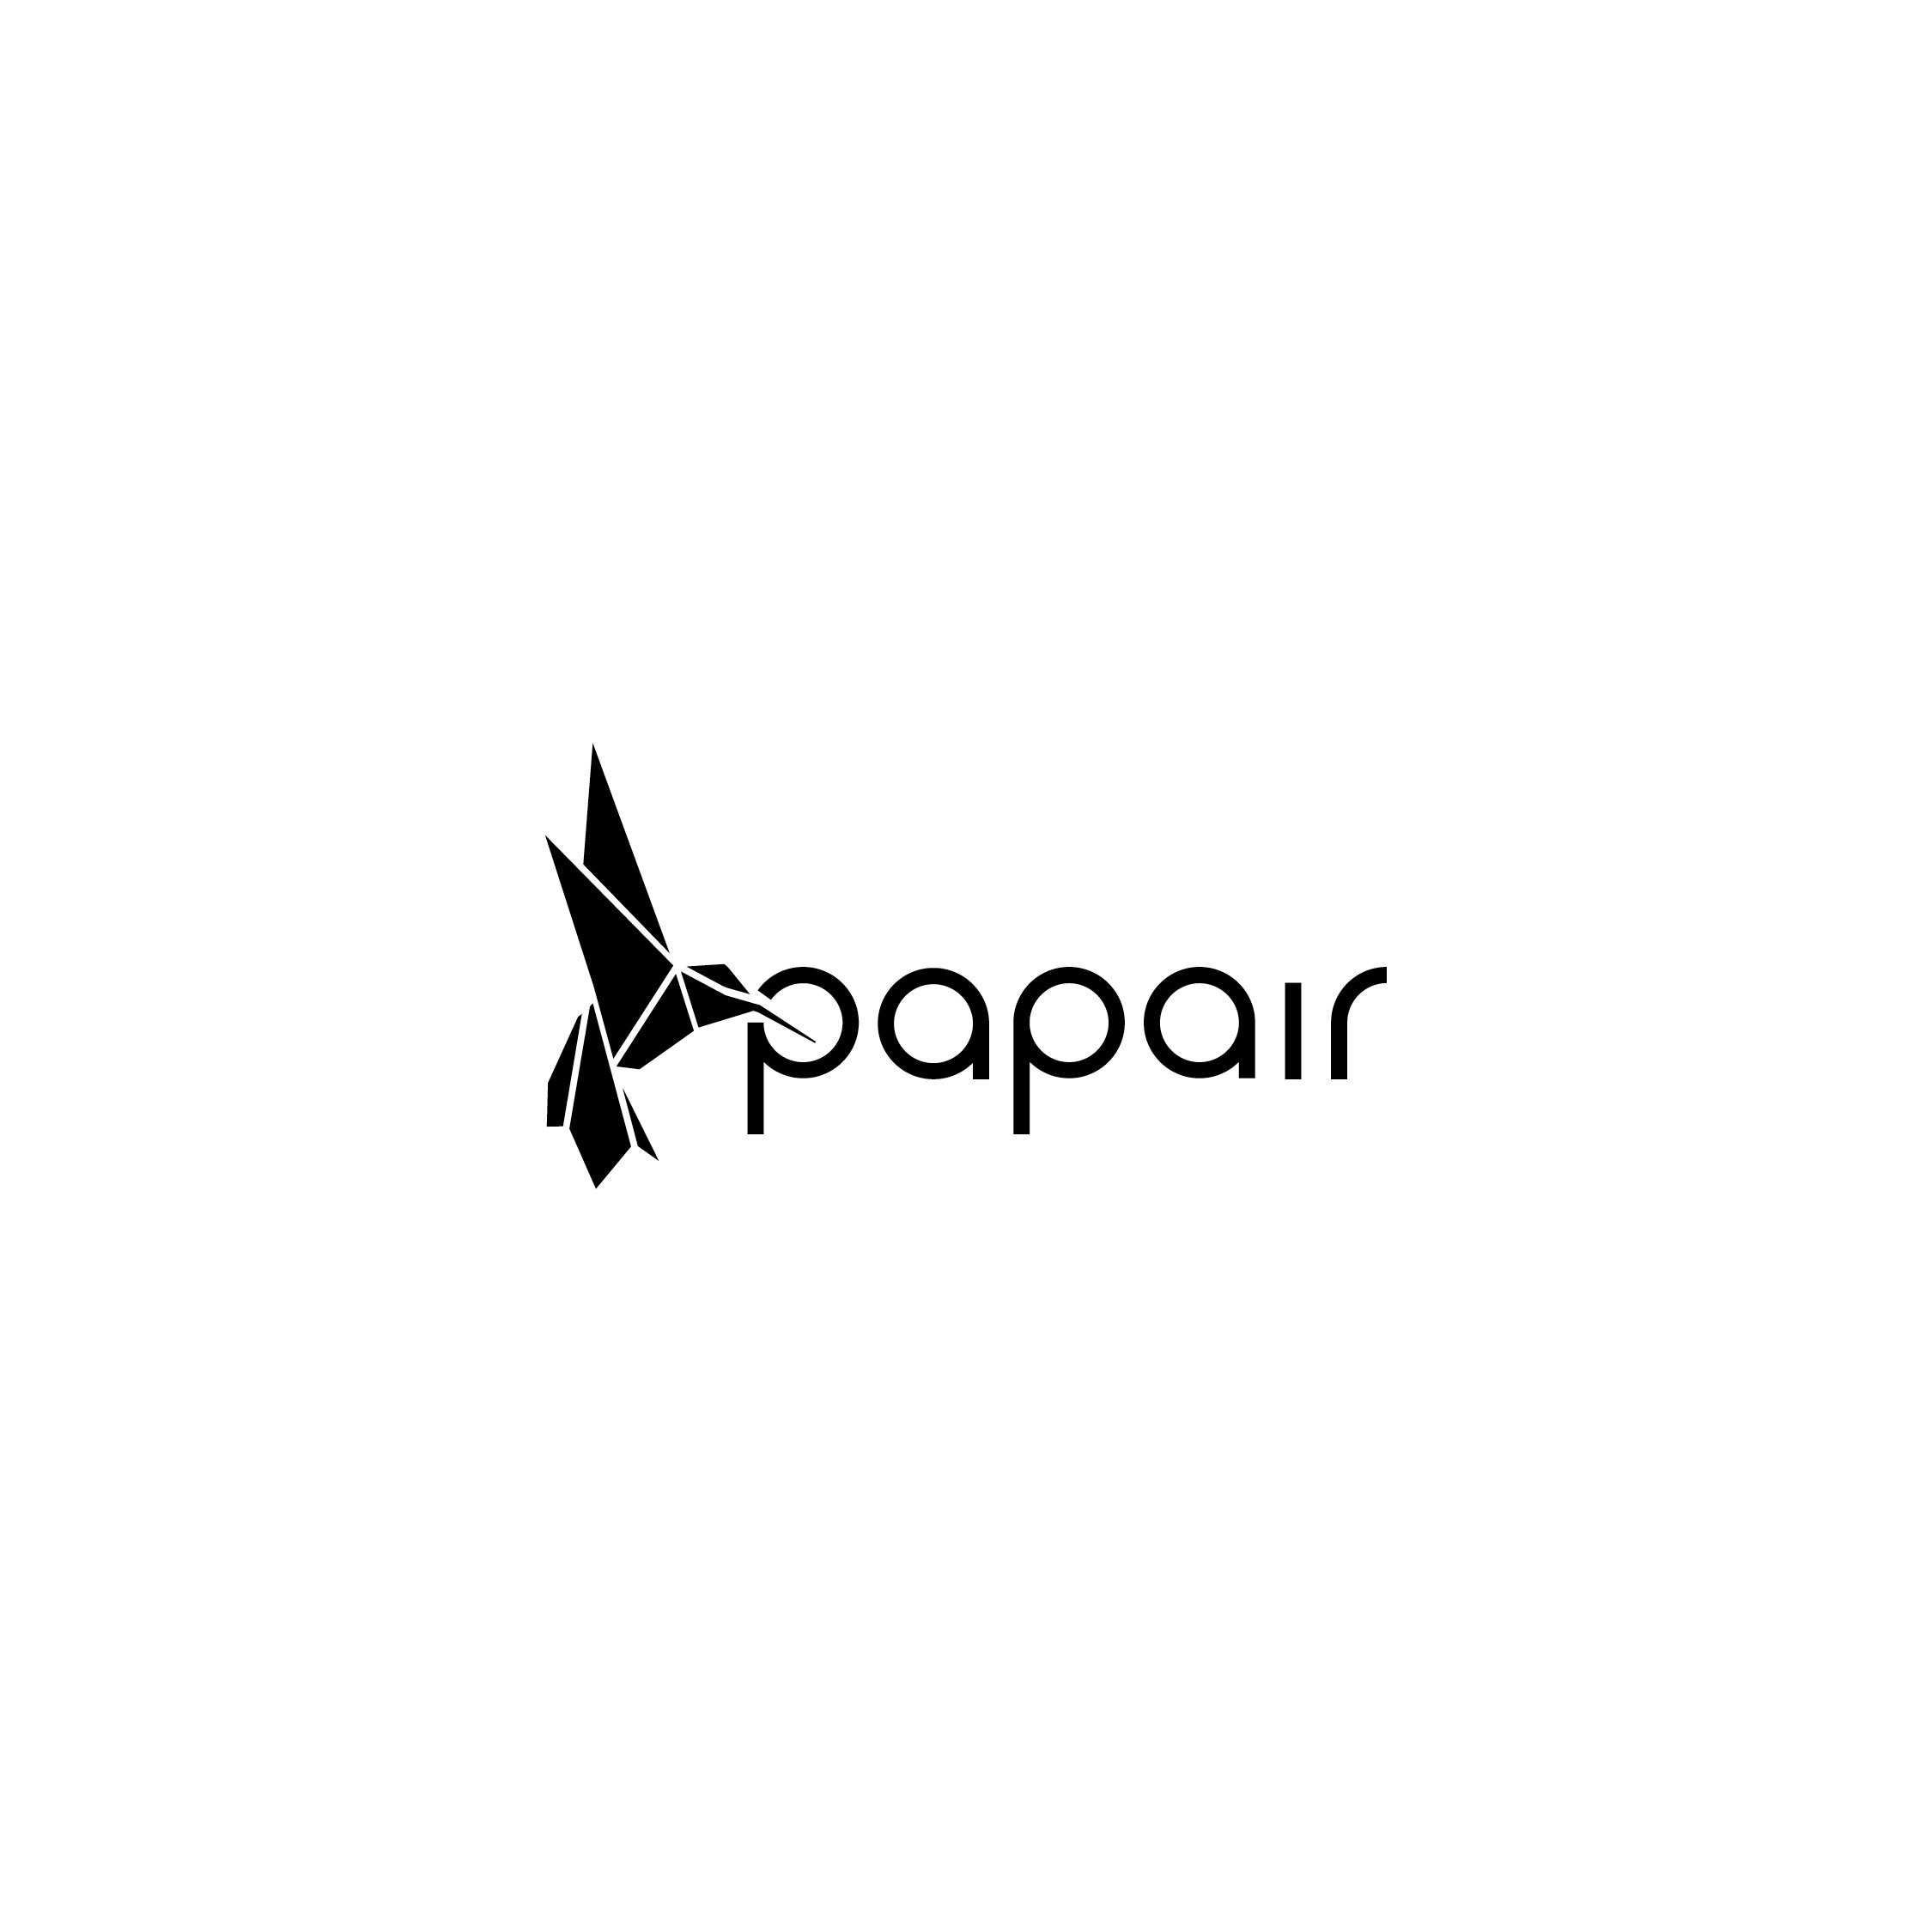 das Markenlogo der Marke Papair